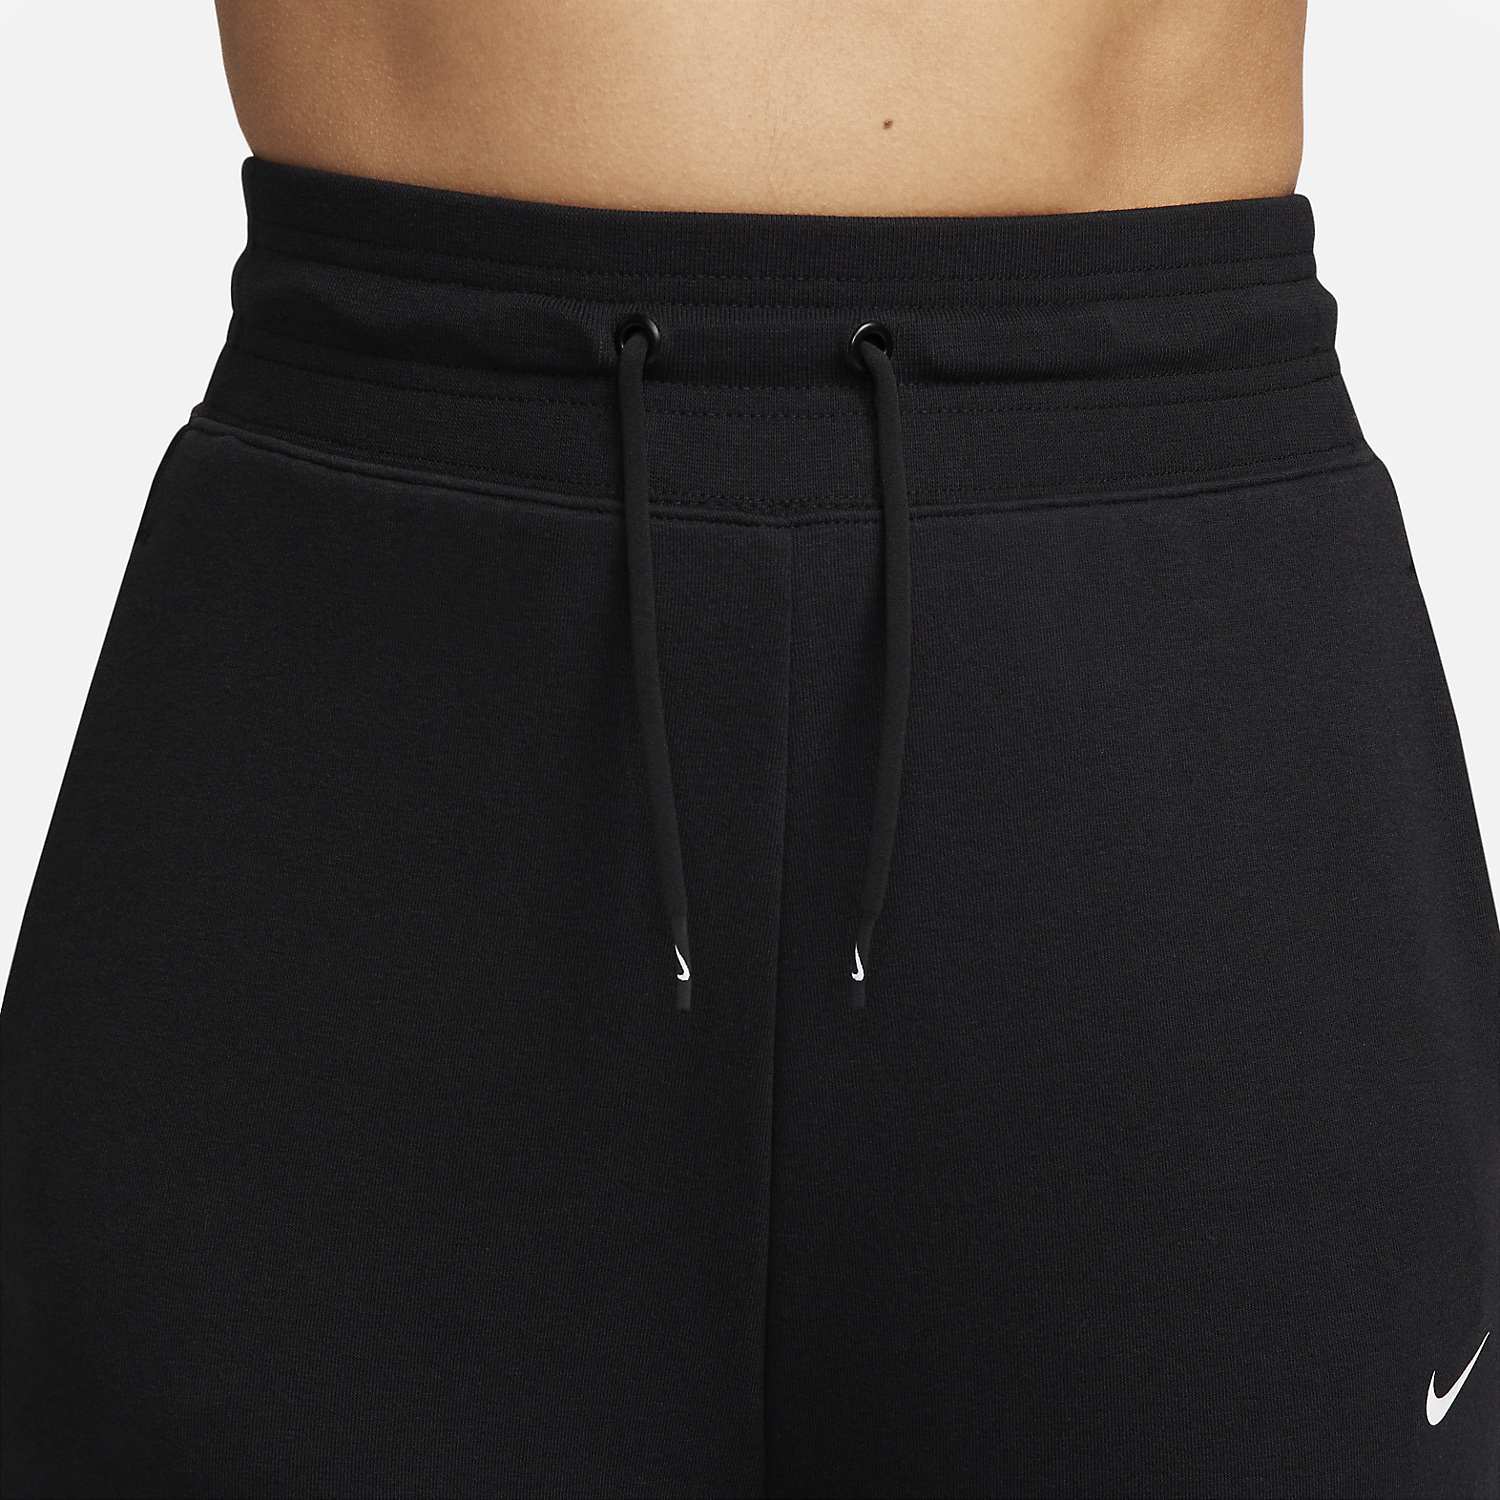 Nike Dri-FIT One Pantalones - Black/White